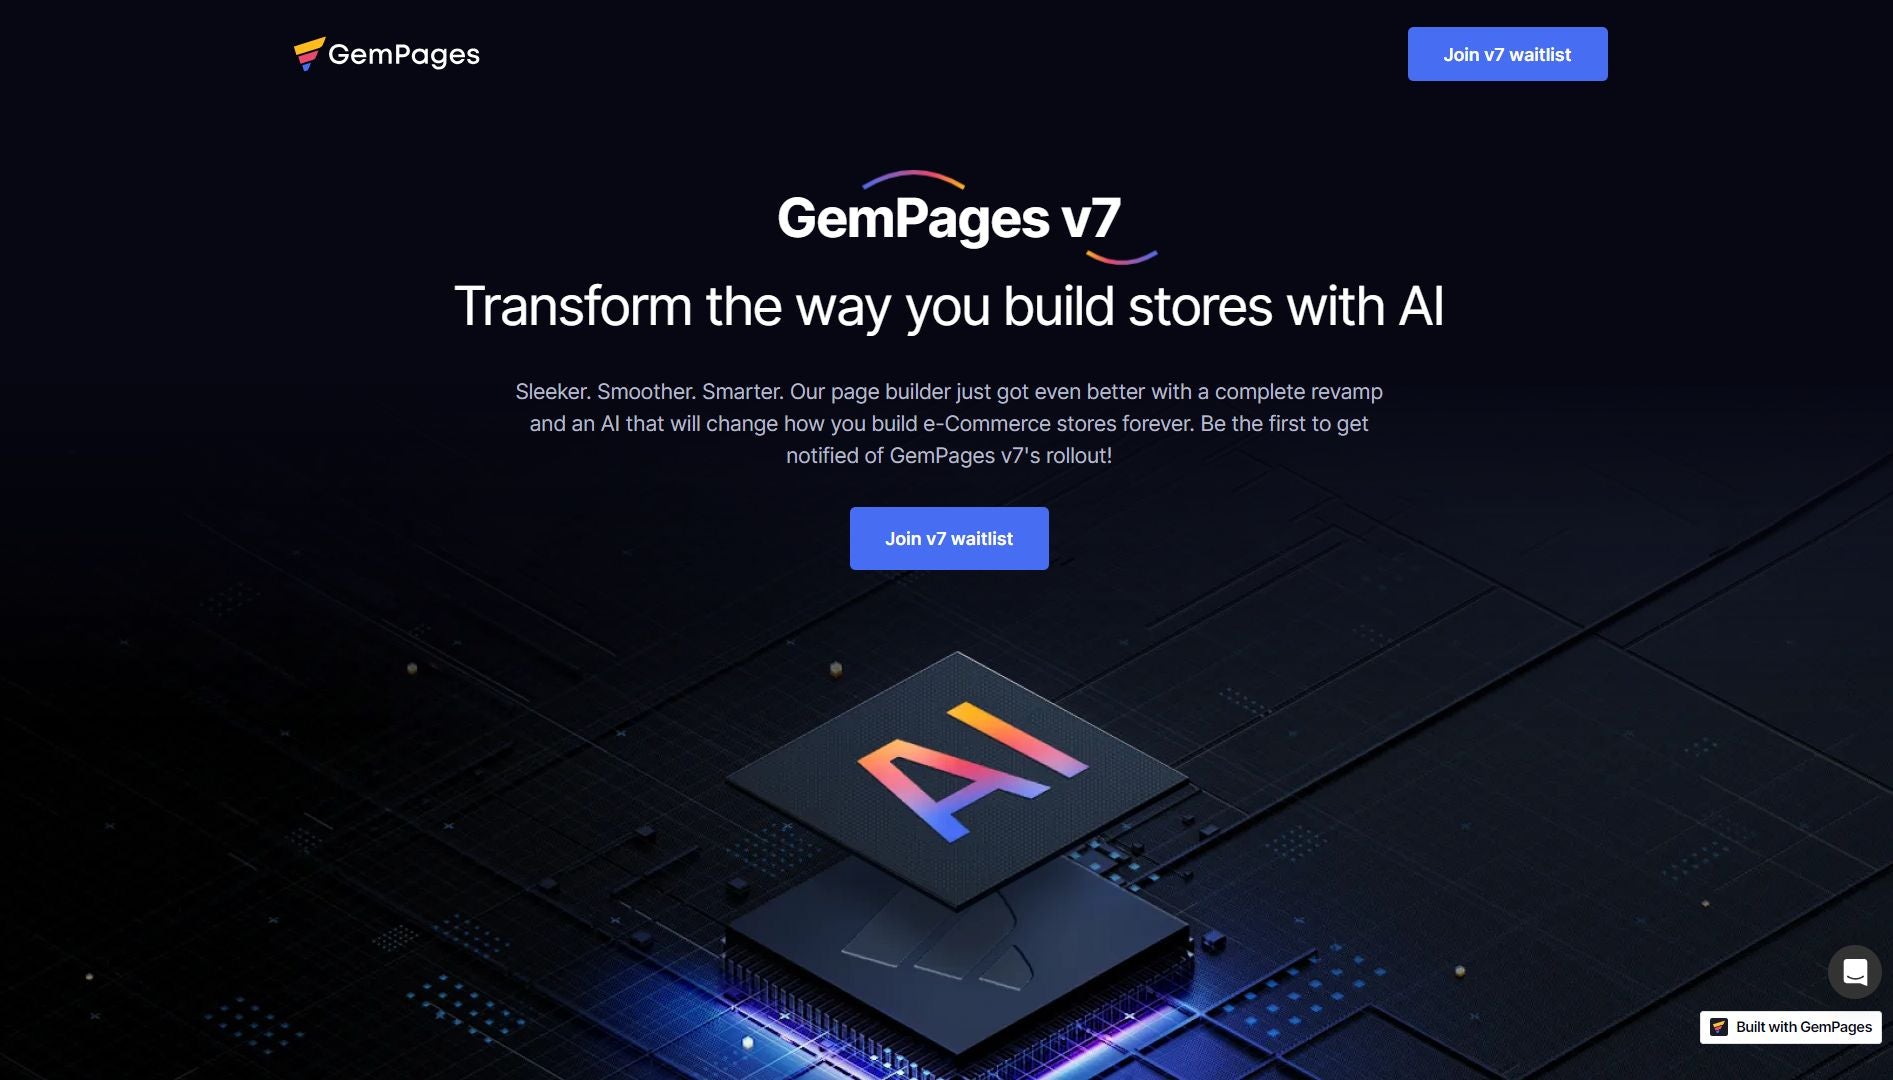 GemPages V7